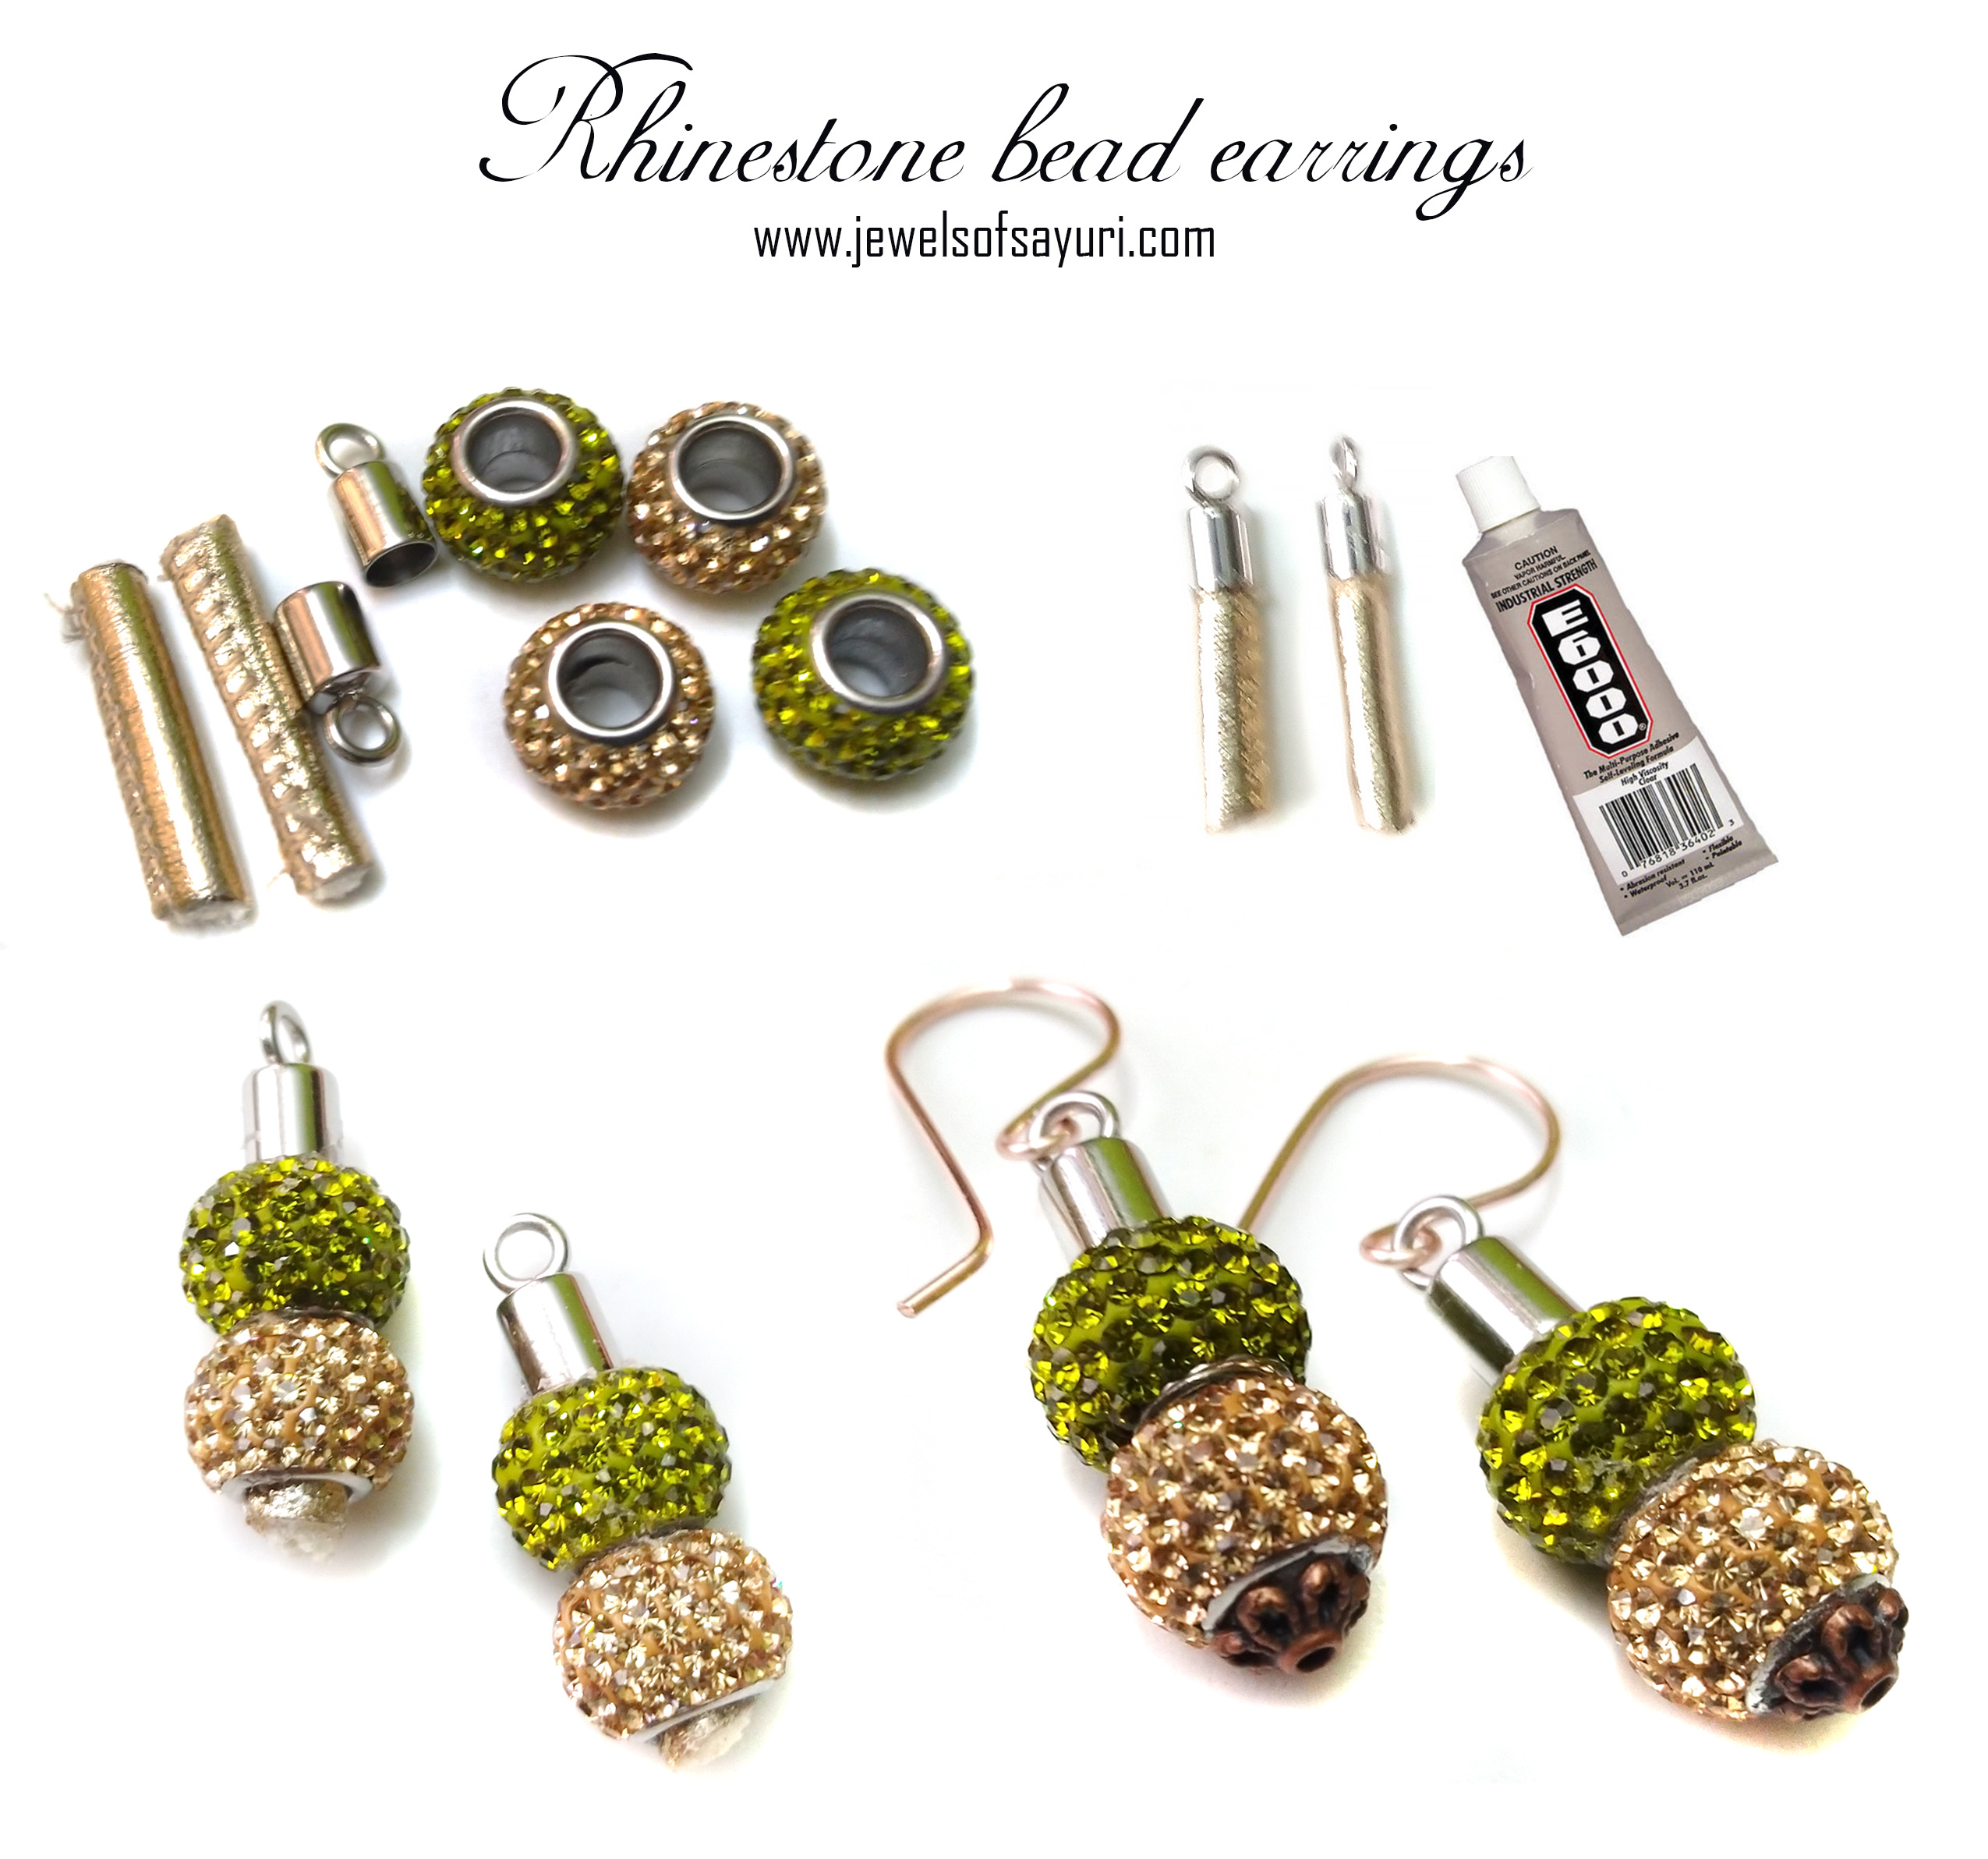 diy Rhinestone bead earrings tutorial